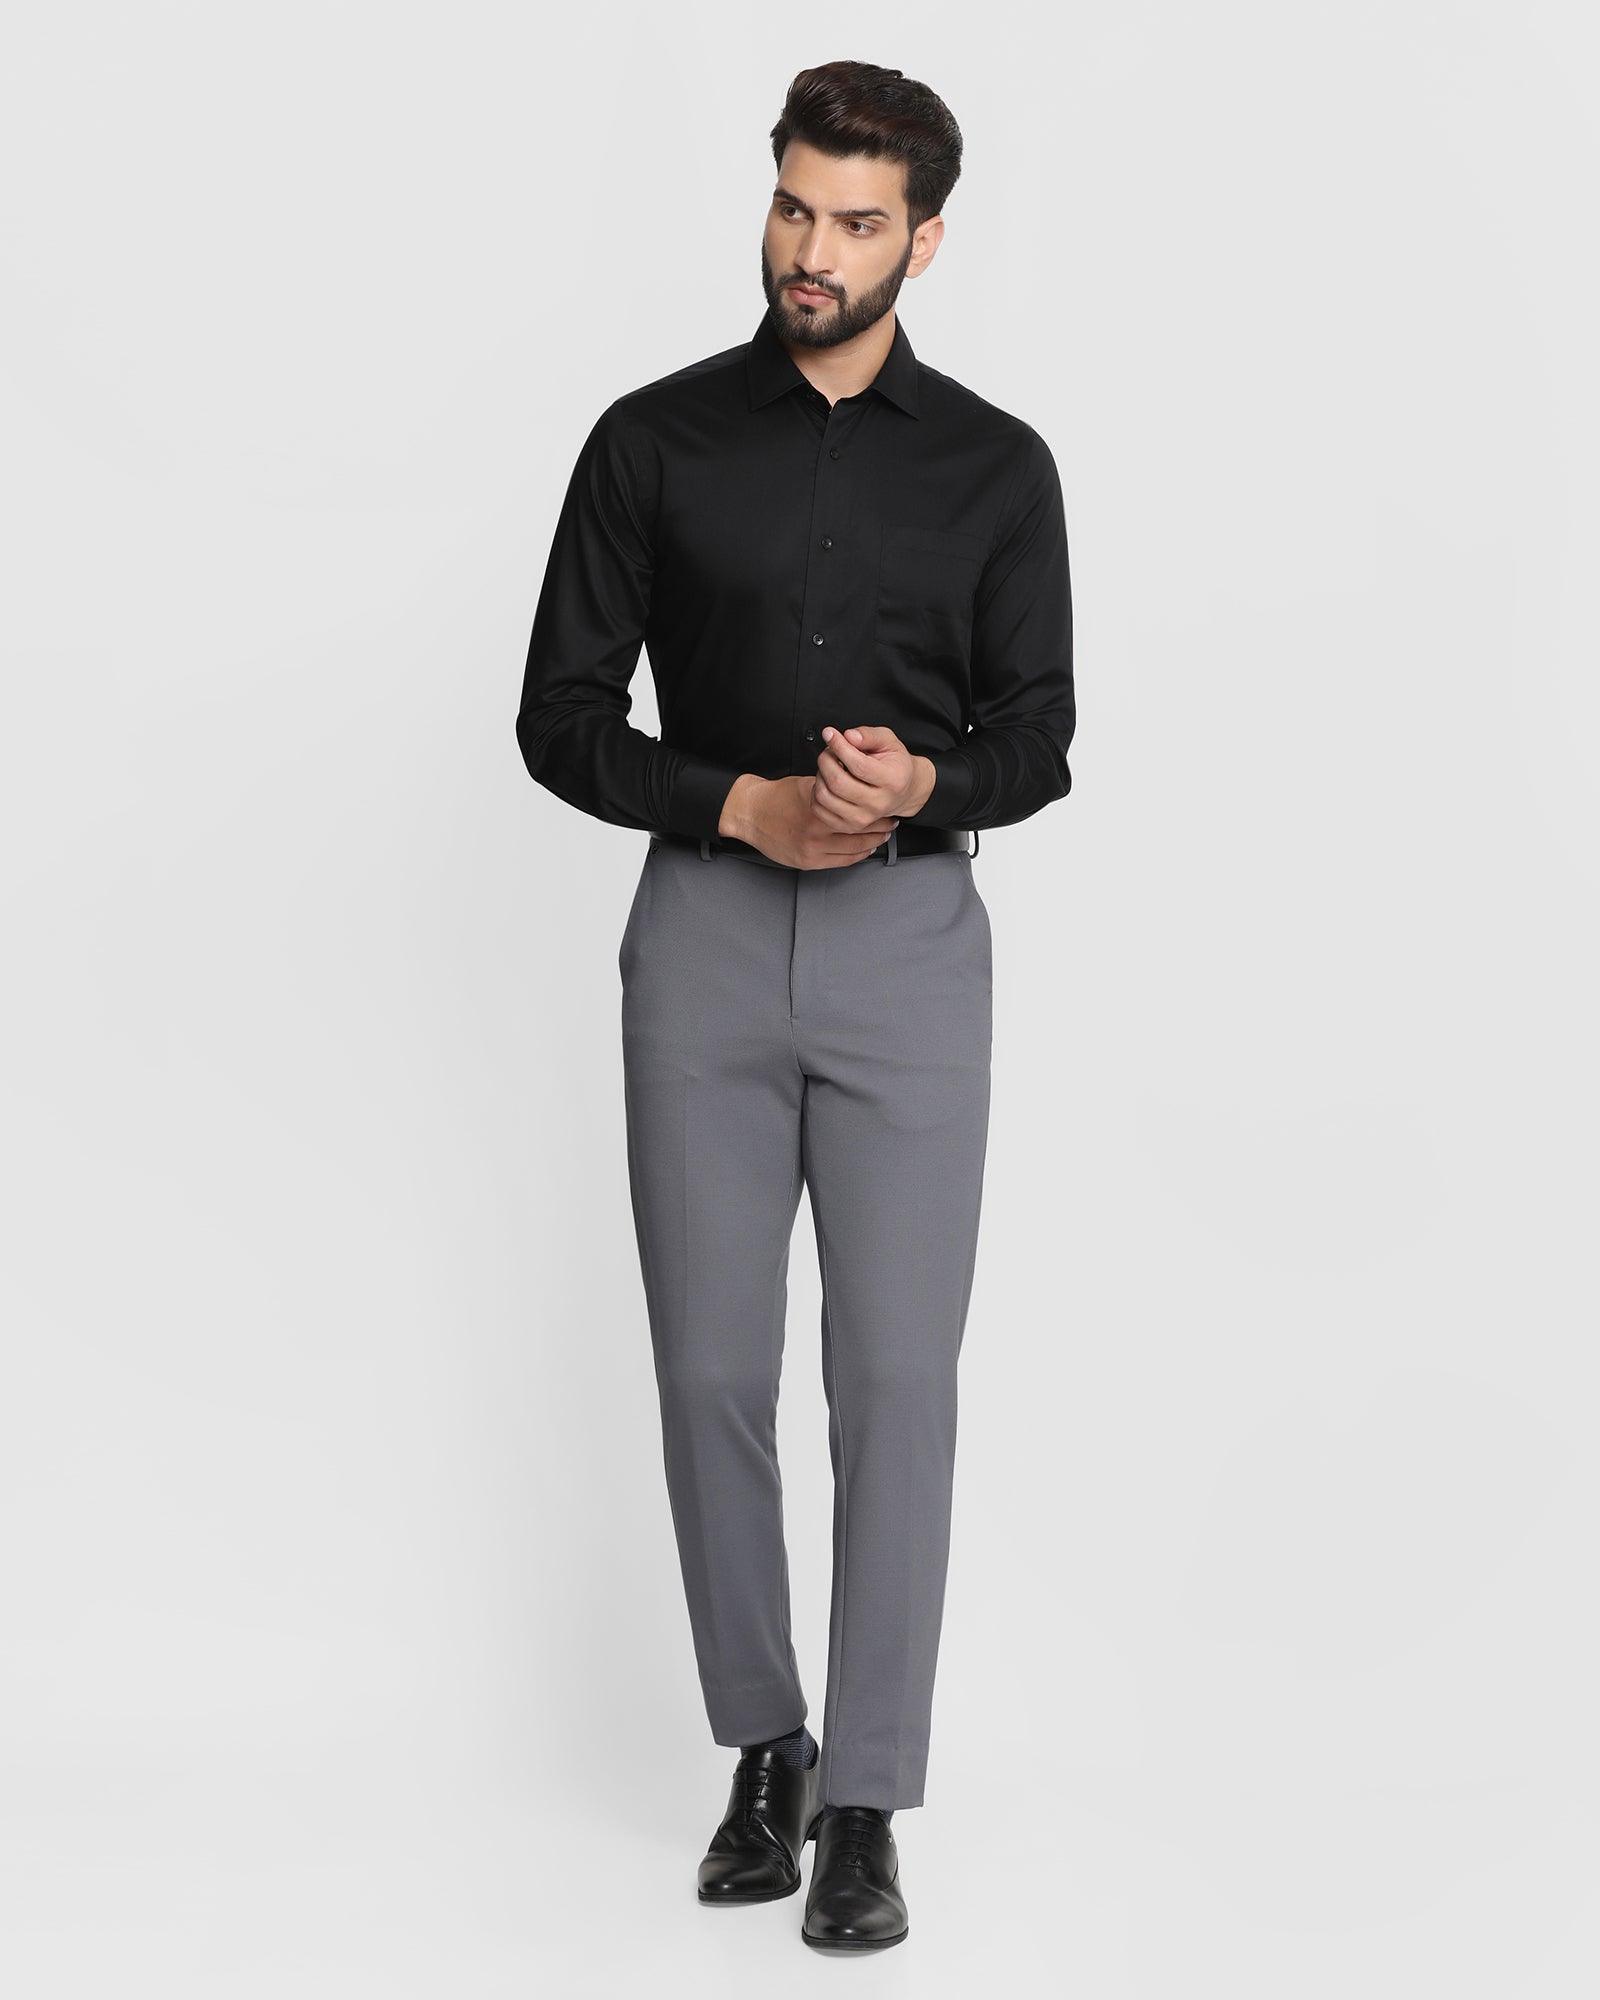 Clothes for Short Men | Men's Clothing | Ash & Erie